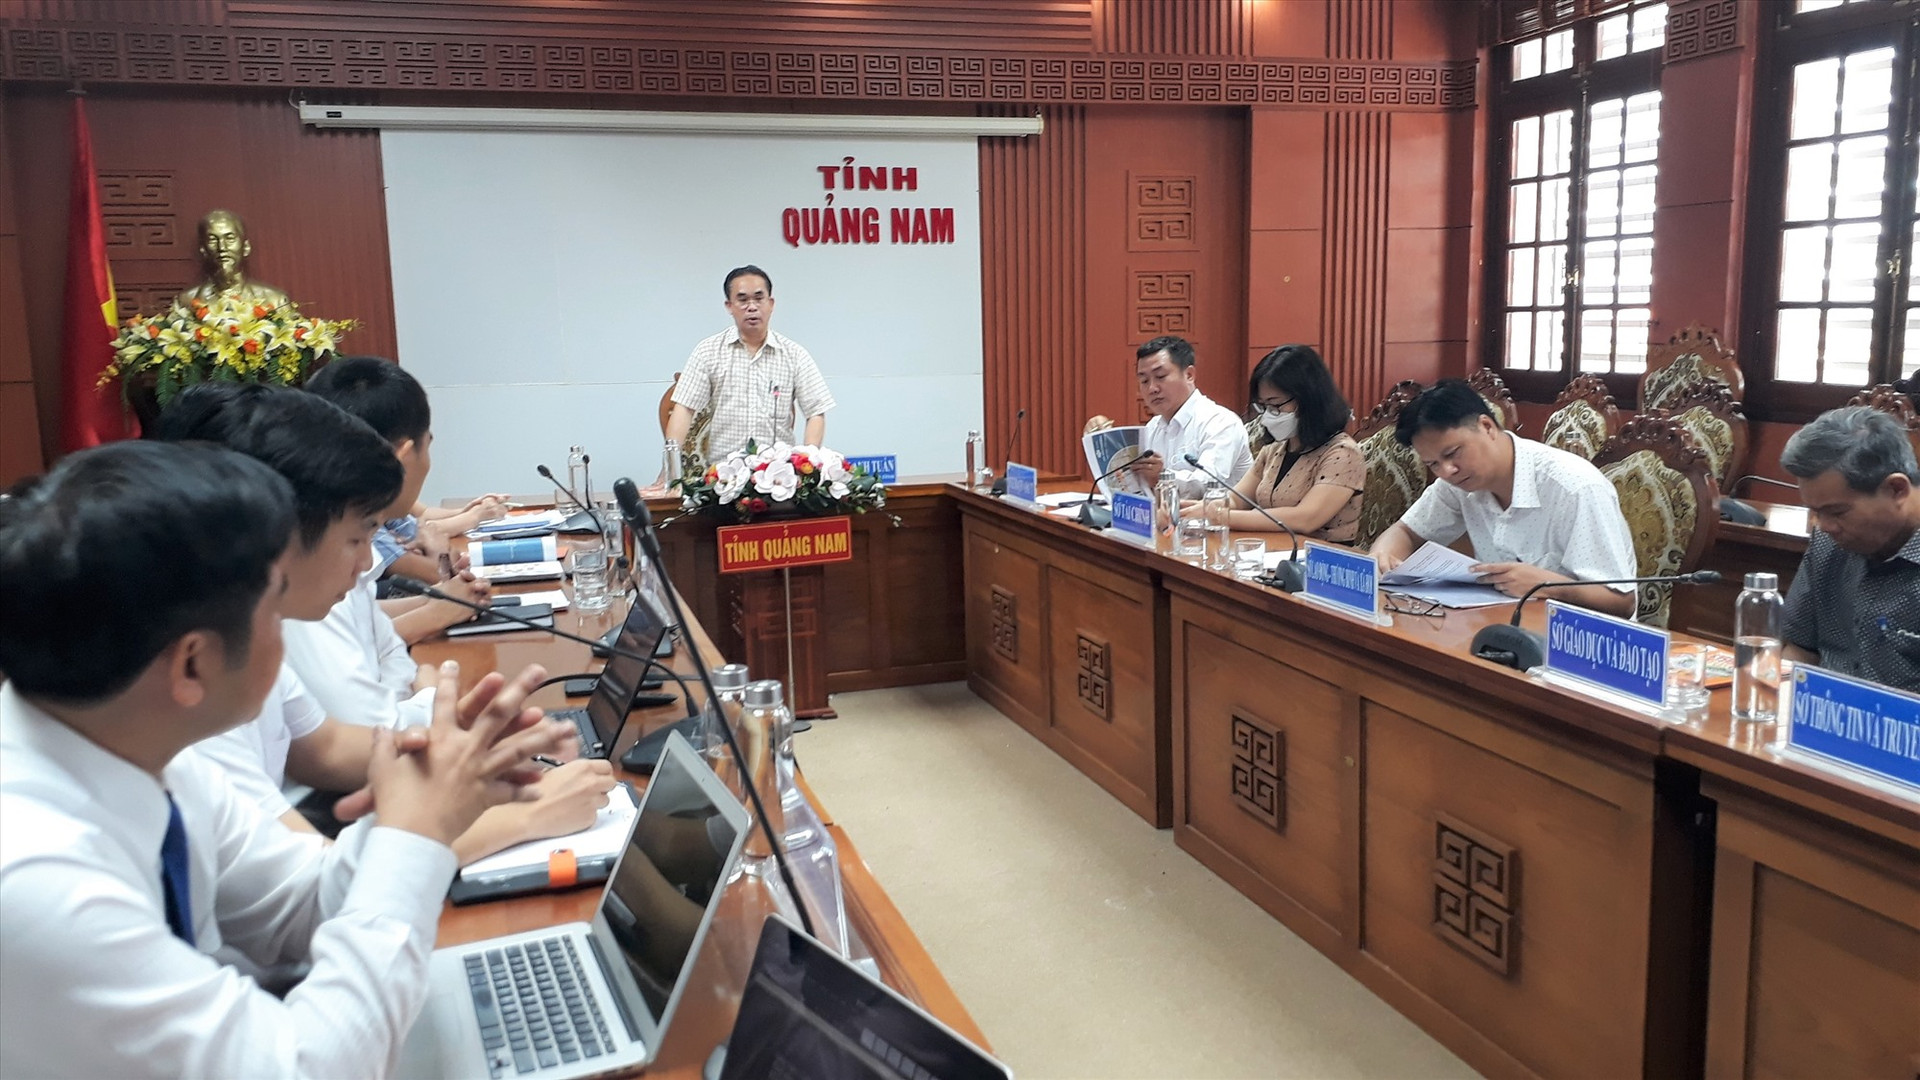 Phó Chủ tịch UBND tỉnh Trần Anh Tuấn phát biểu tạo buổi làm việc với trường. Ảnh: X.P